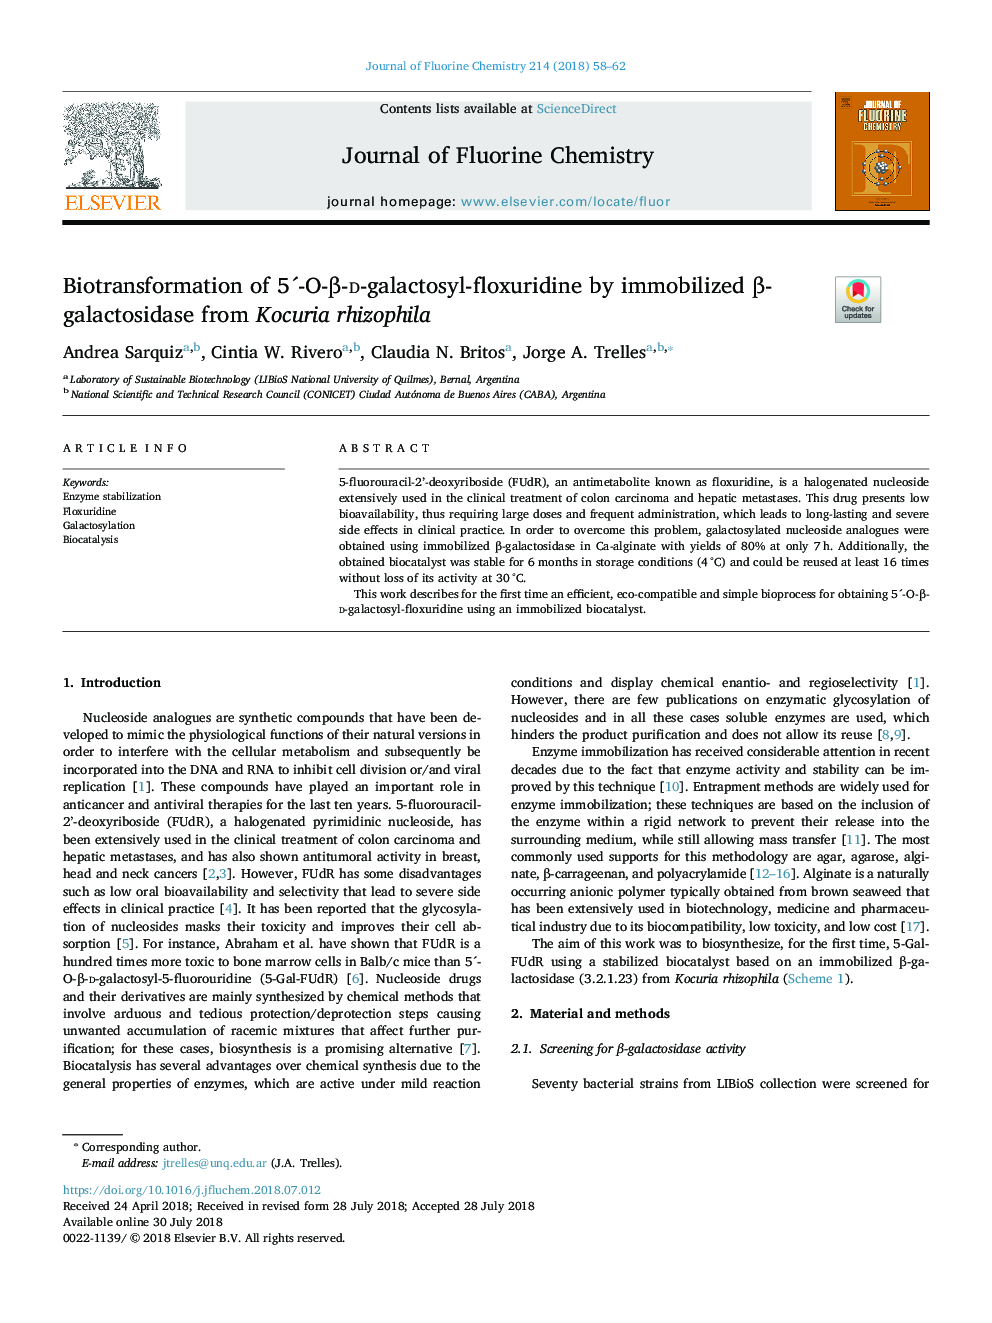 Biotransformation of 5Â´-O-Î²-d-galactosyl-floxuridine by immobilized Î²-galactosidase from Kocuria rhizophila